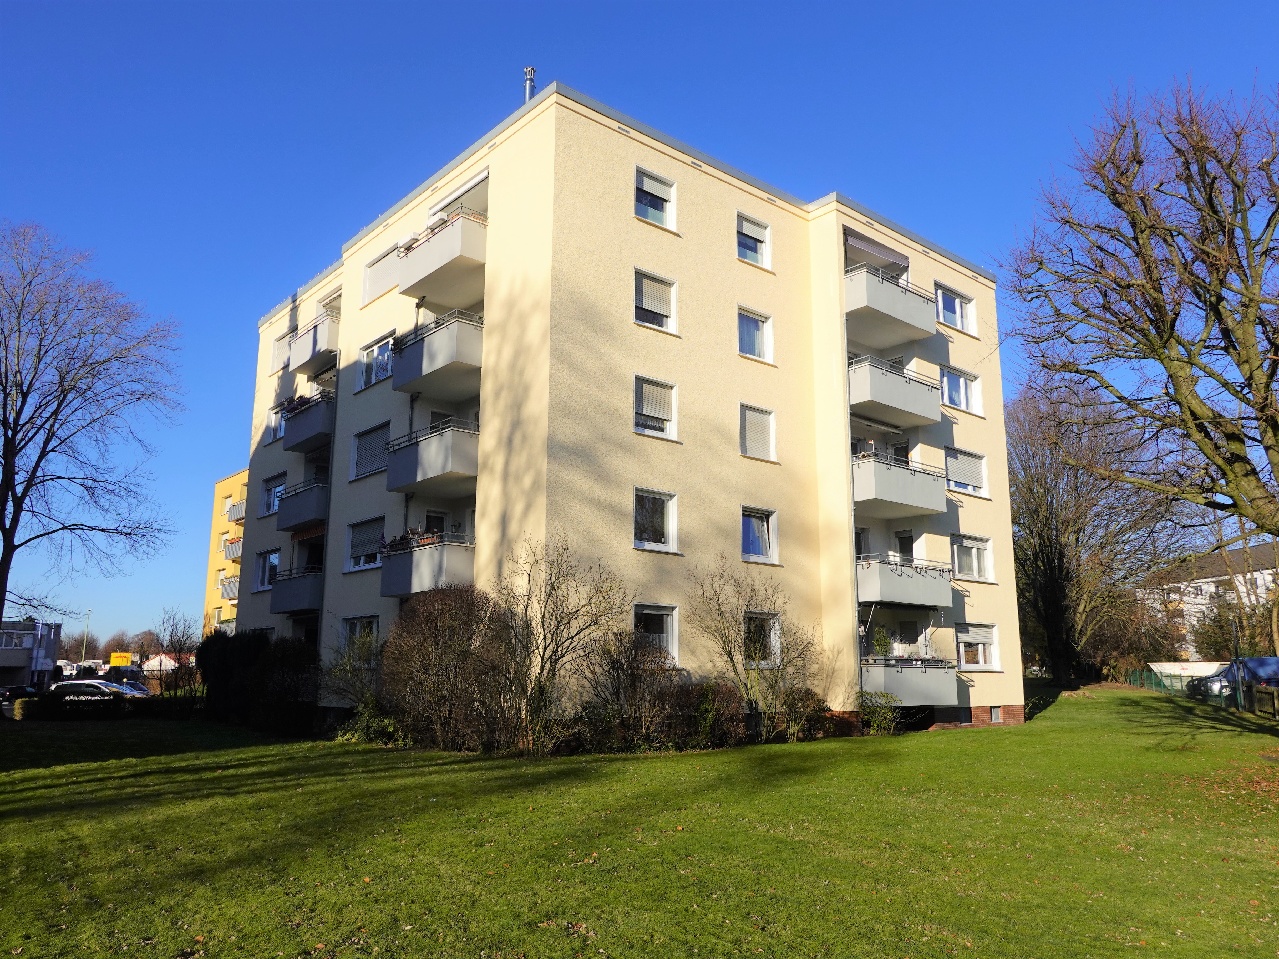 Vermietete Eigentumswohnung in Hohenlimburg- Elsey mit Aufzug, Süd-Balkon und Tageslichtbad